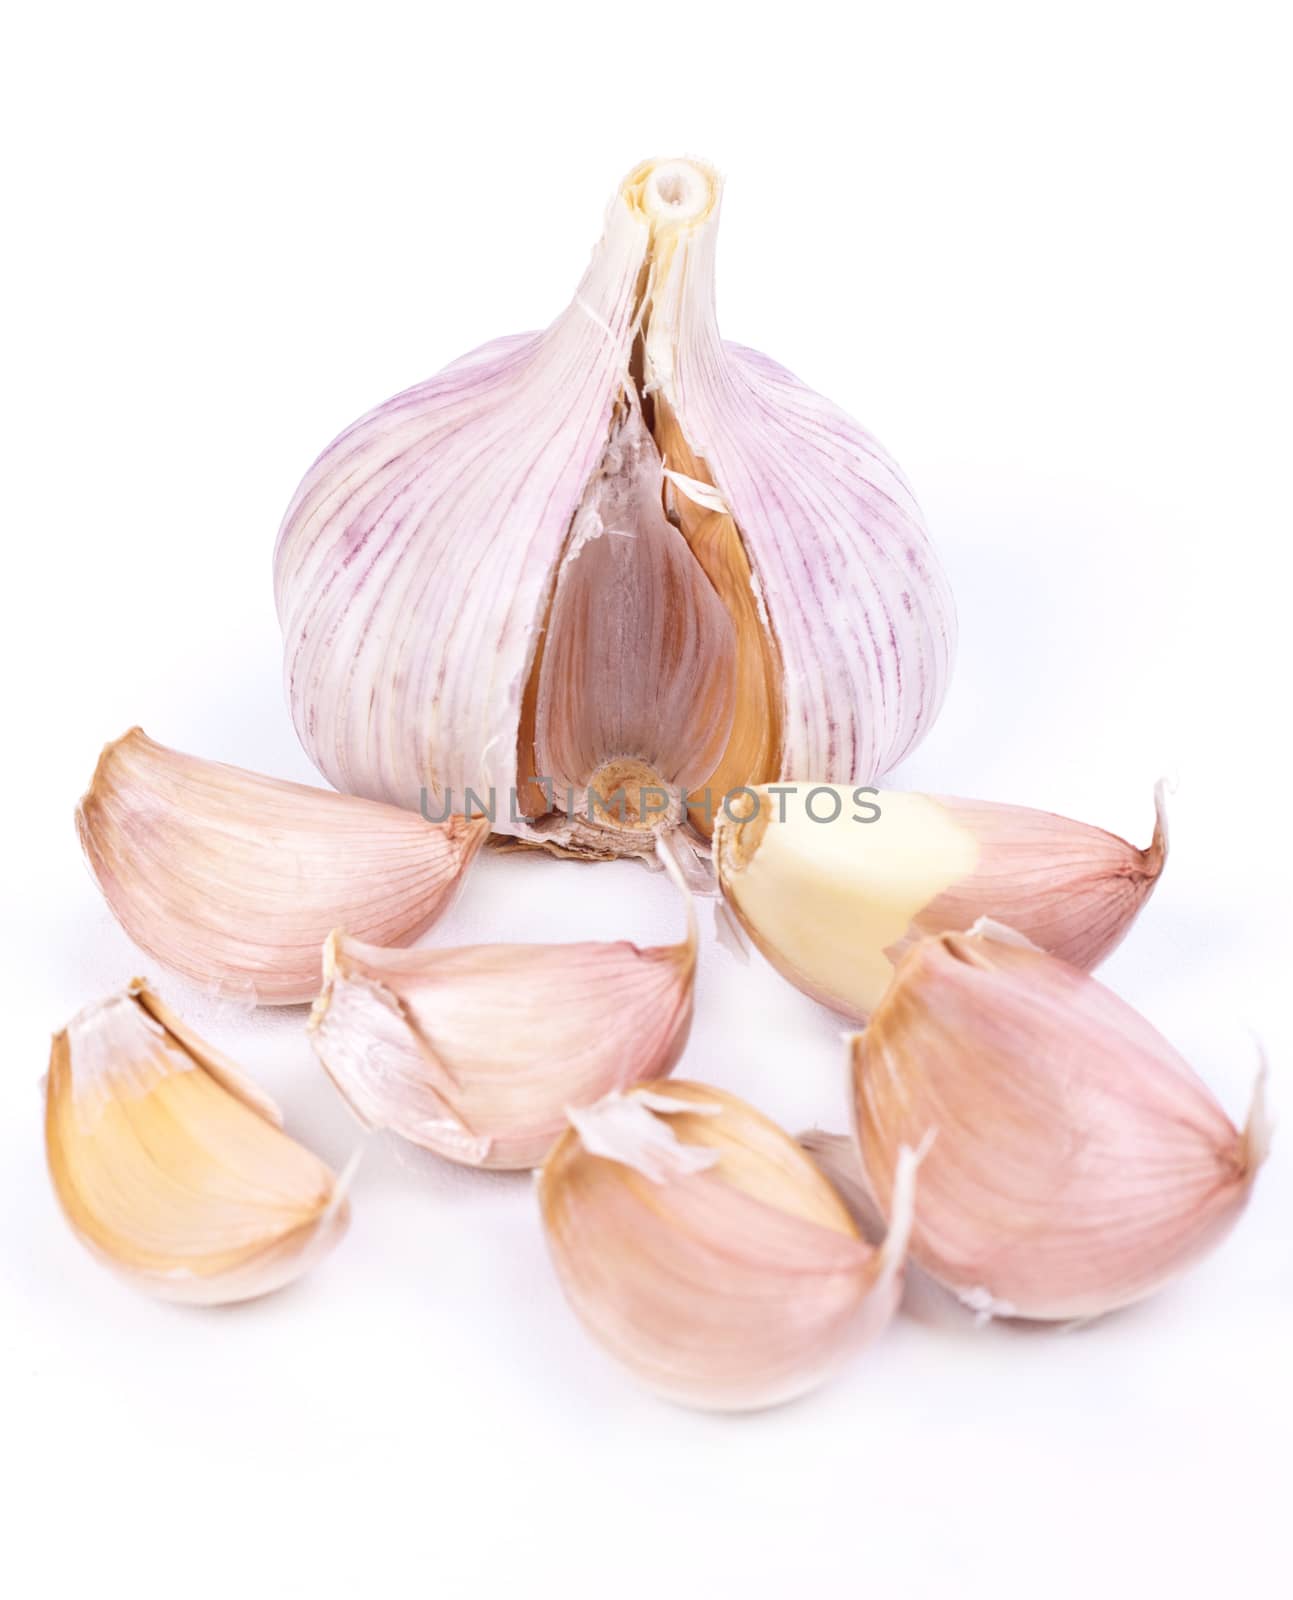  garlic on a white background